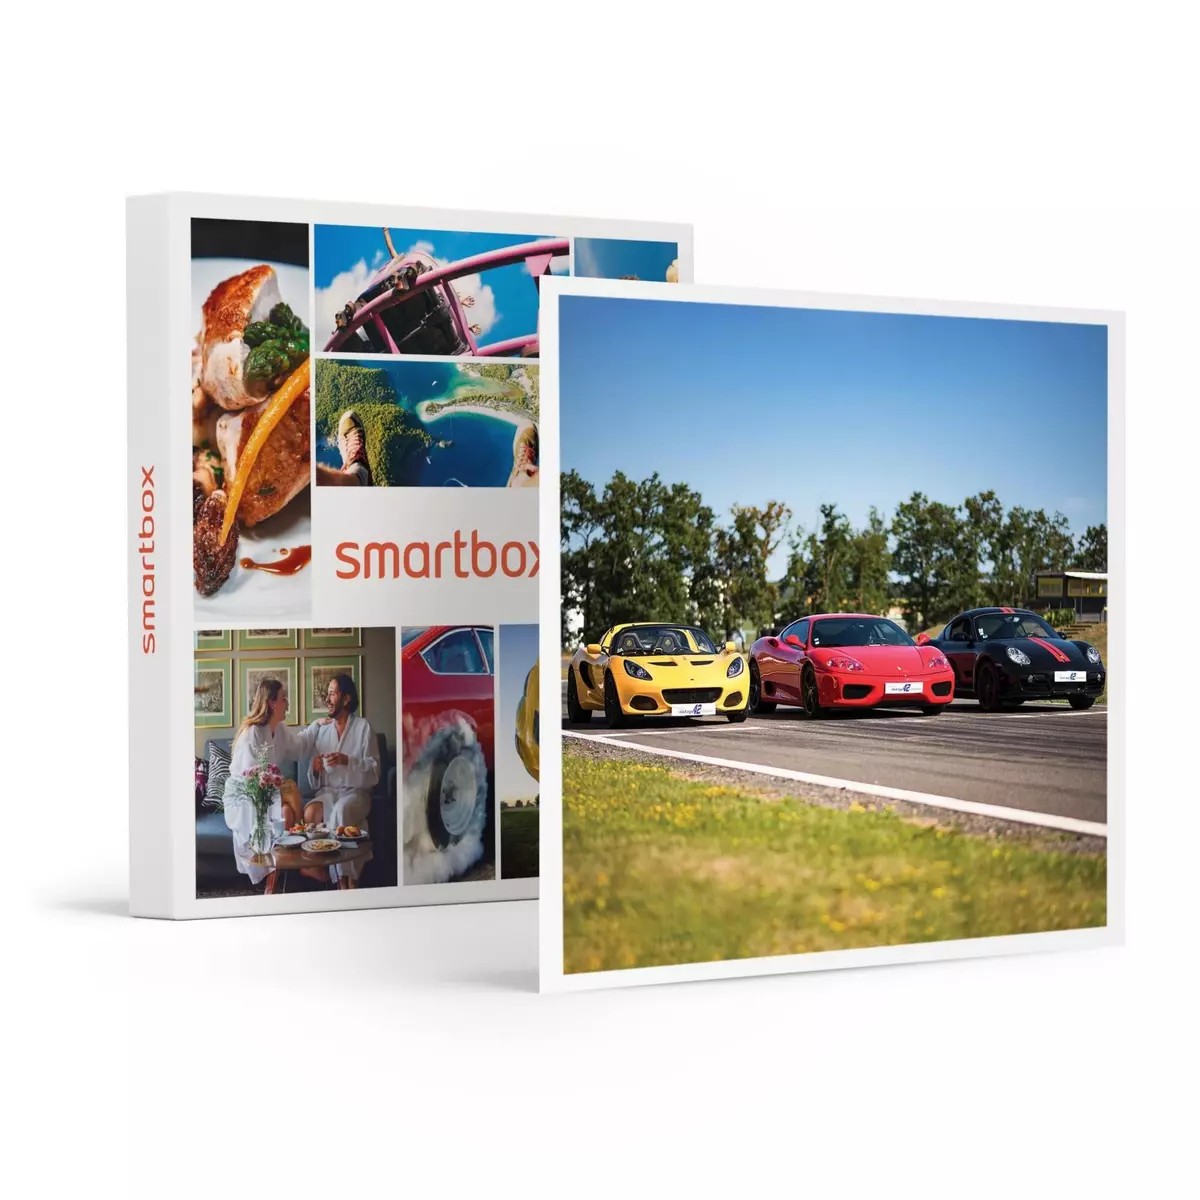 Smartbox Séance de 9 tours de pilotage sur circuit à bord de 3 voitures de sport - Coffret Cadeau Sport & Aventure